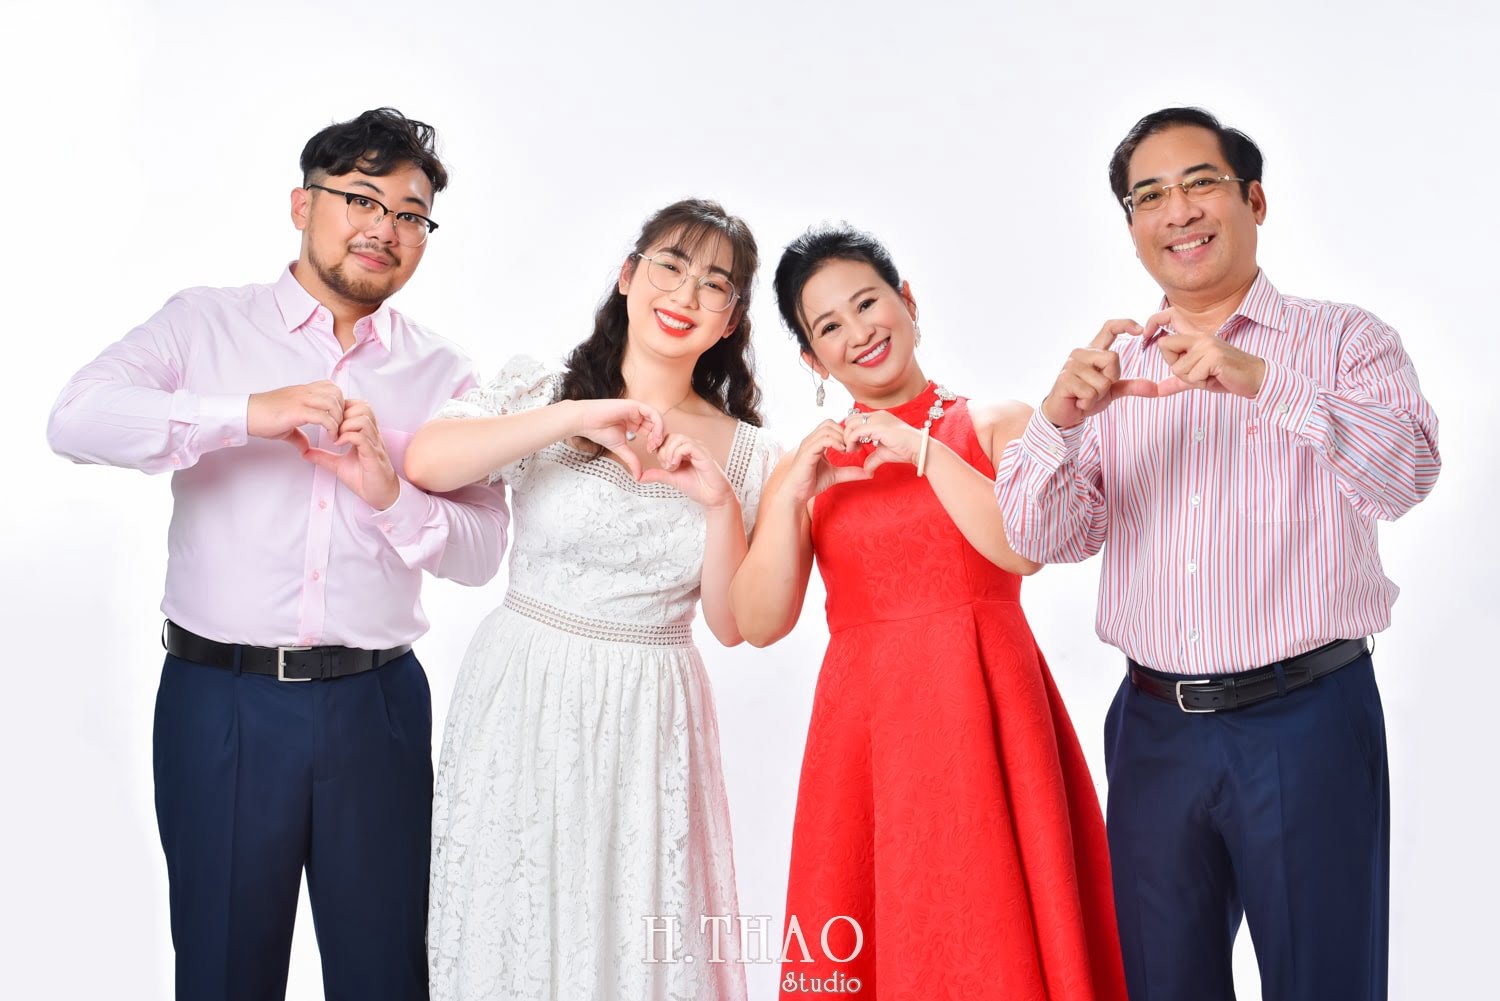 Anh gia dinh 4 nguoi 14 min - 45 cách tạo dáng chụp ảnh gia đình 4 người ấn tượng nhất - HThao Studio